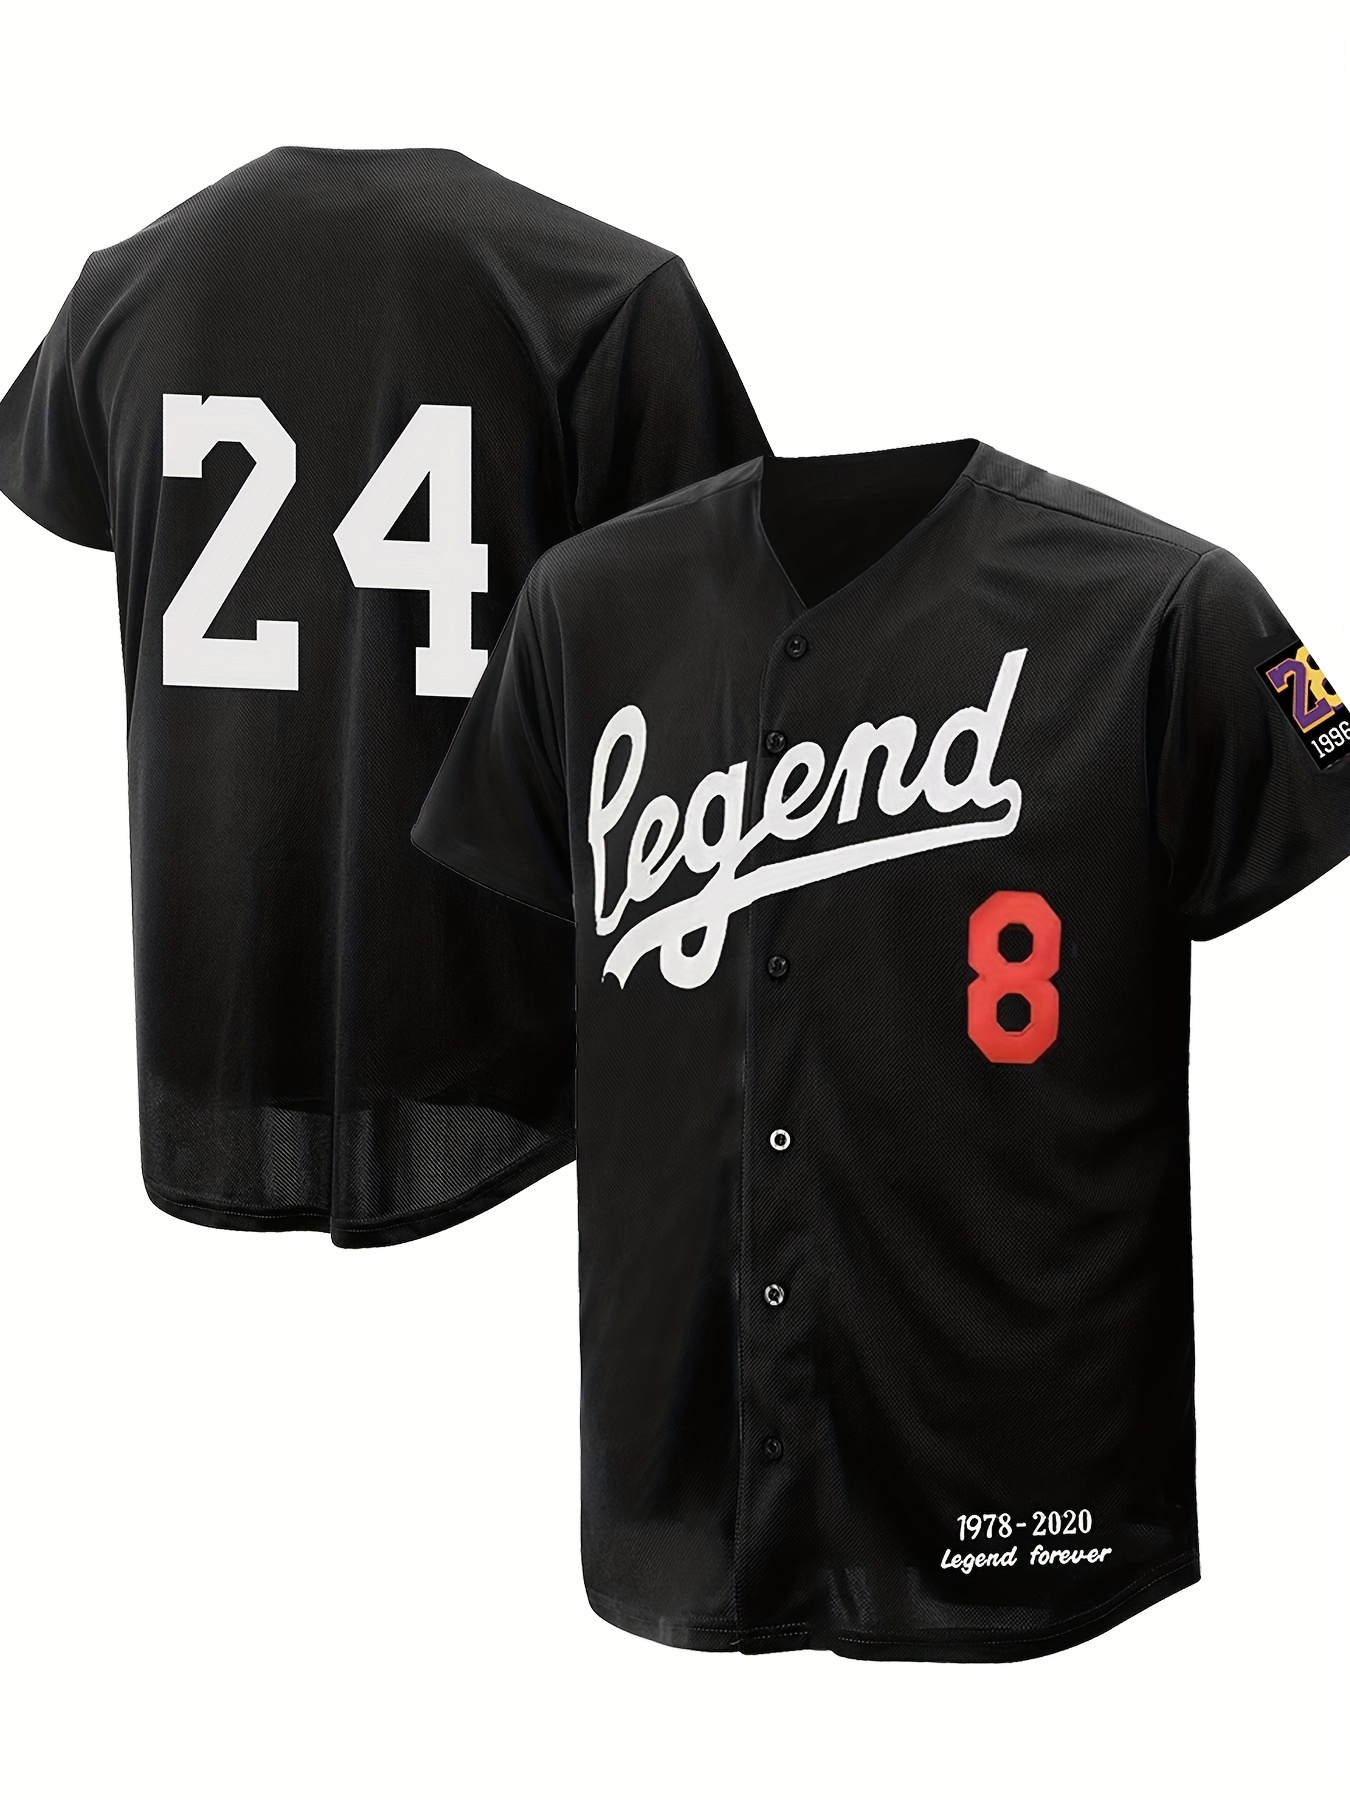 Legend 34 Baseball Jersey 2XL